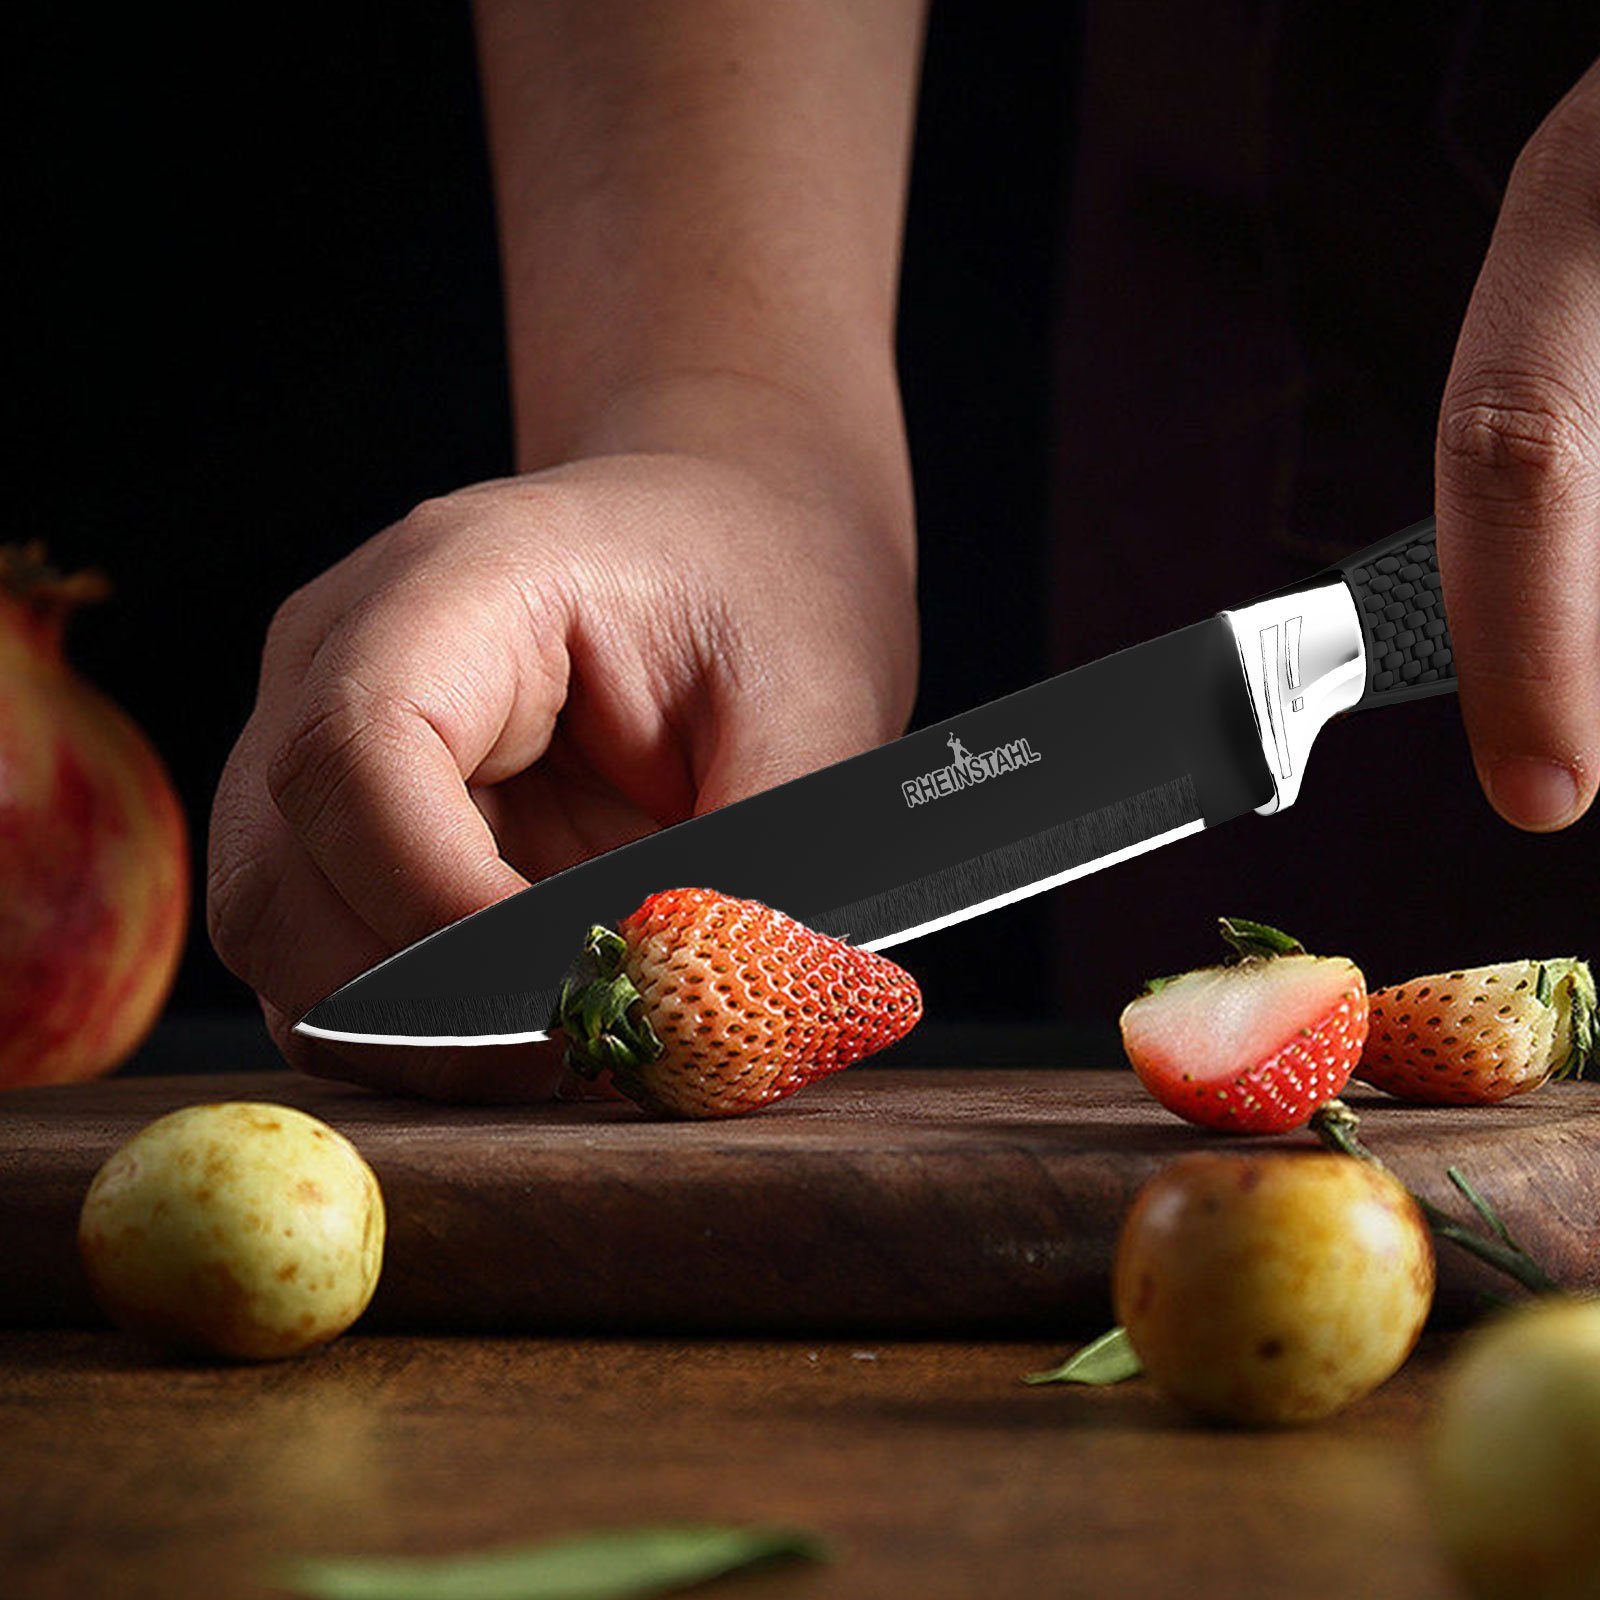 Küchenmesser Set 4 Küchenmesser teilig Messerblock Set Messerset Messer-Set Profi Kochmesser hochwertiges Schwarz RHEINSTAHL SelbstschärfenMesser (4-tlg),